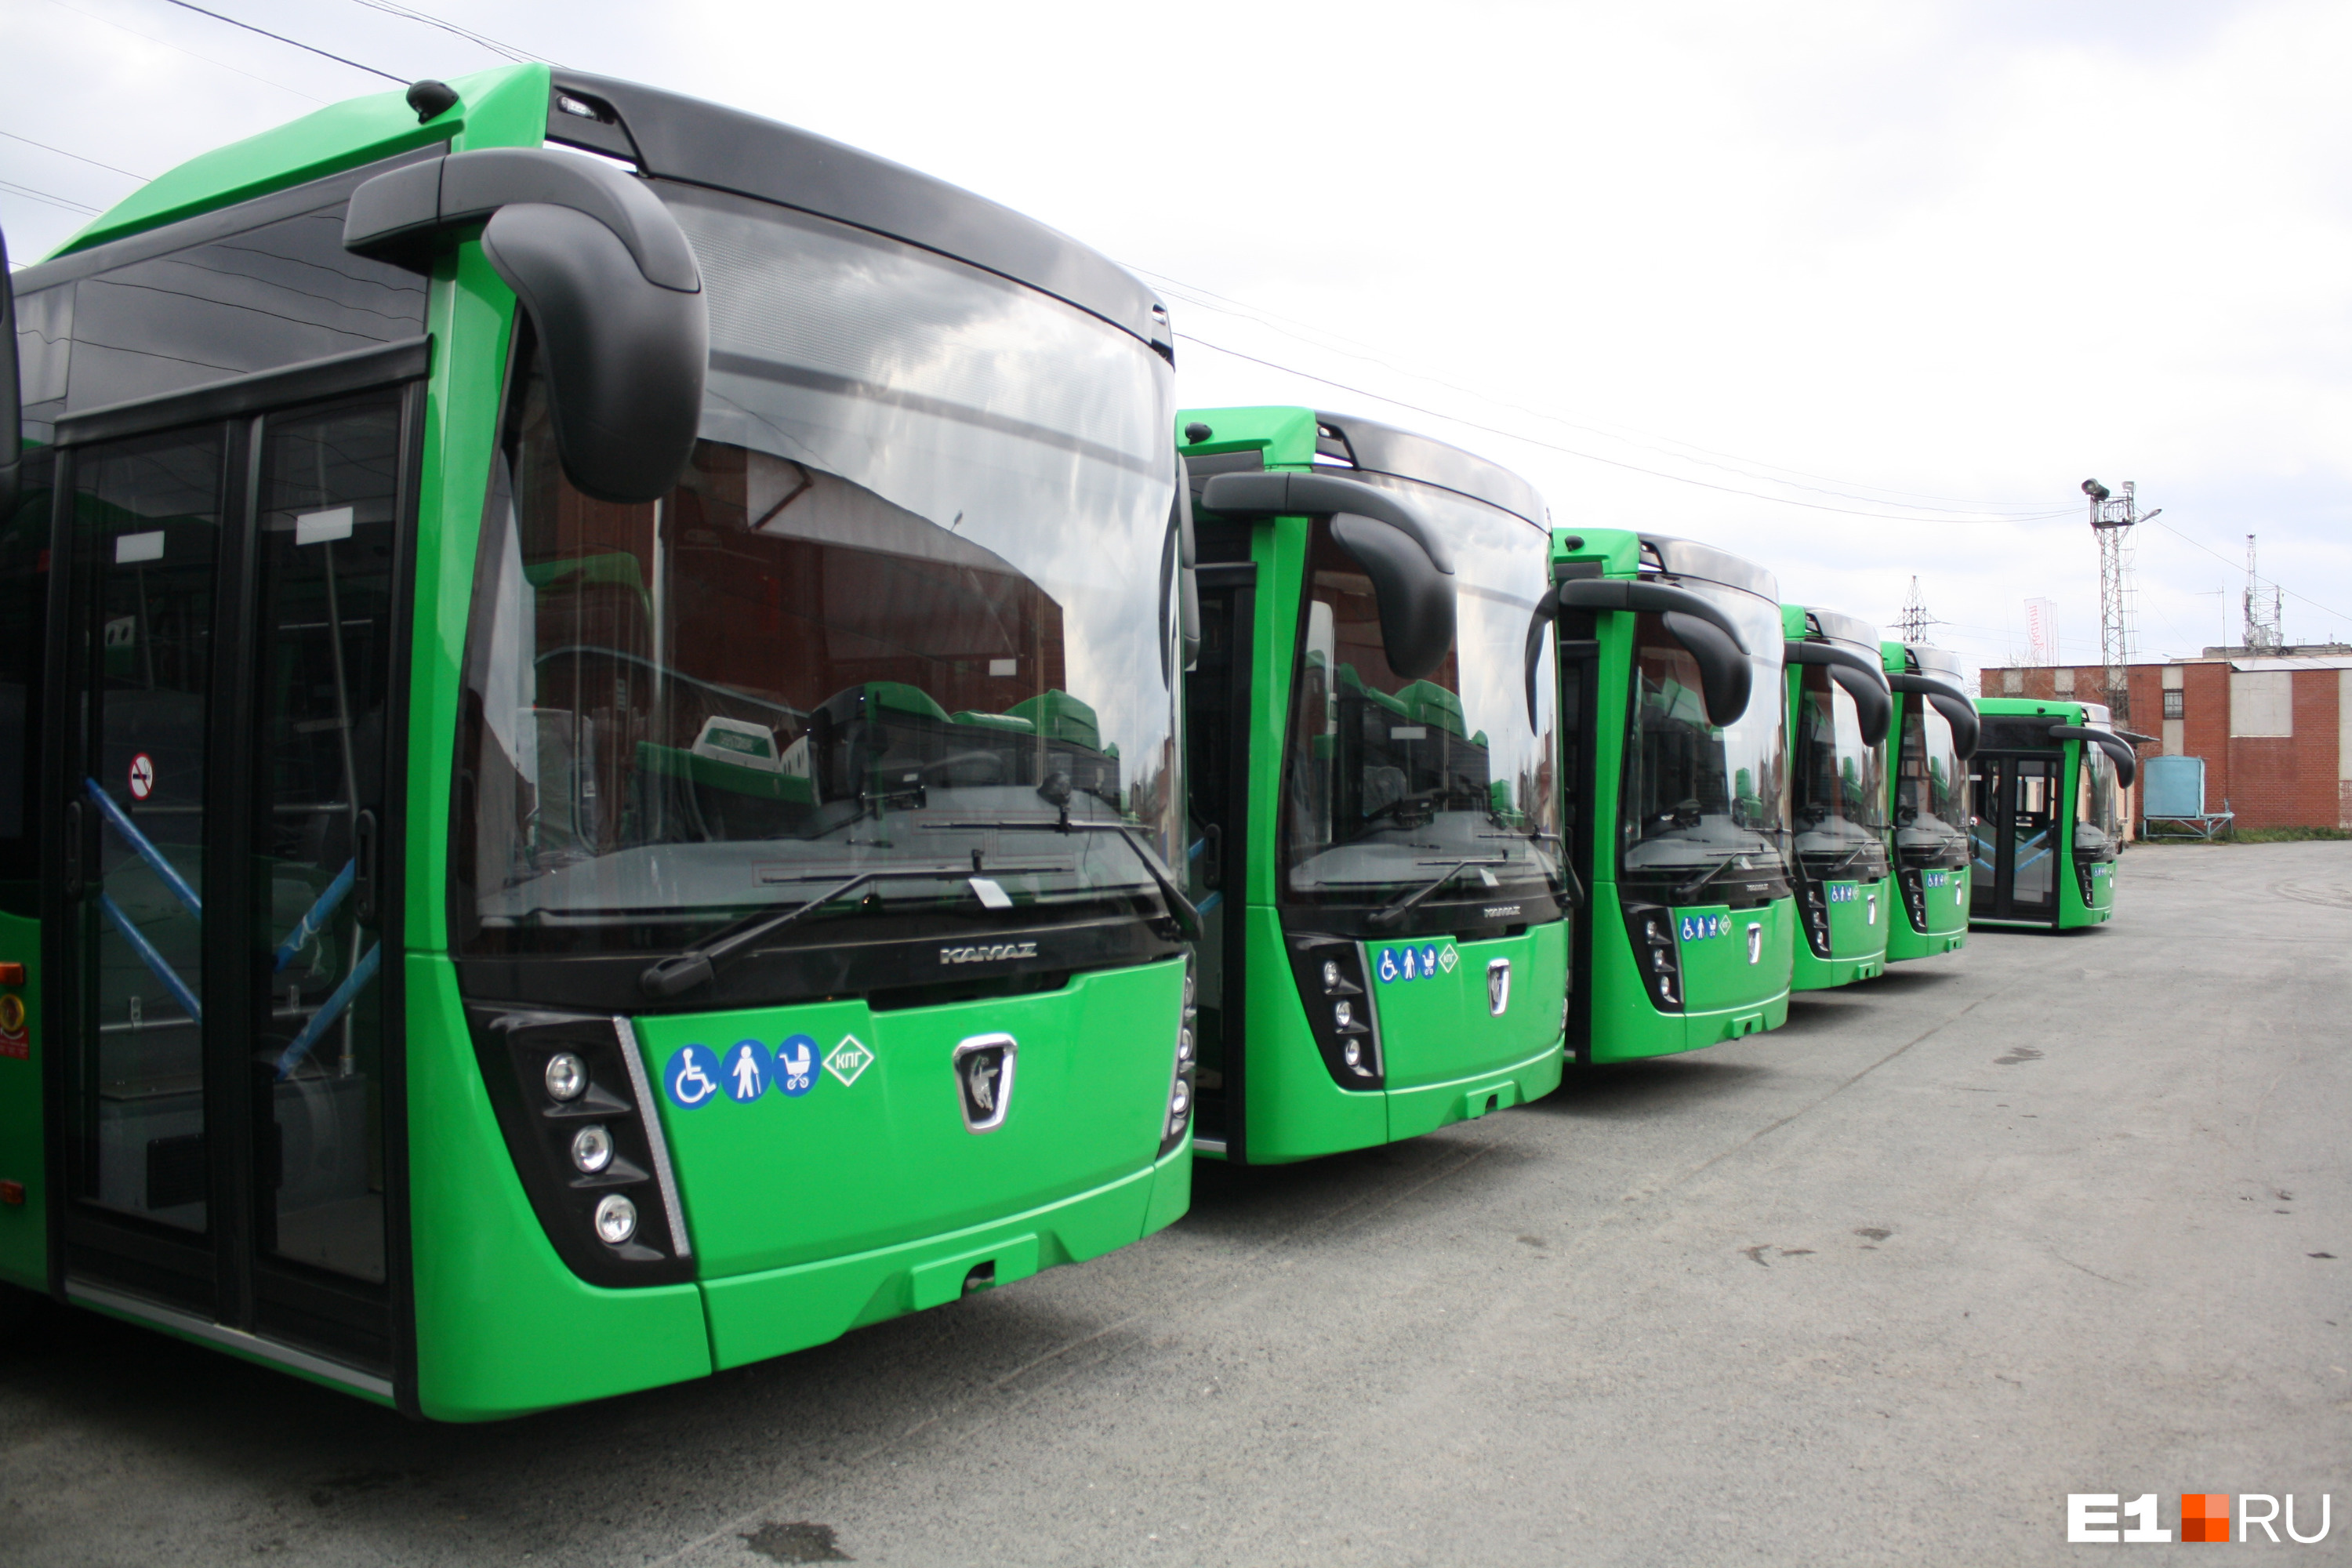 В 2020 году Екатеринбург получил в лизинг по федеральной программе 57 новых автобусов. А вот обновления трамваев и троллейбусов городу ждать еще долго